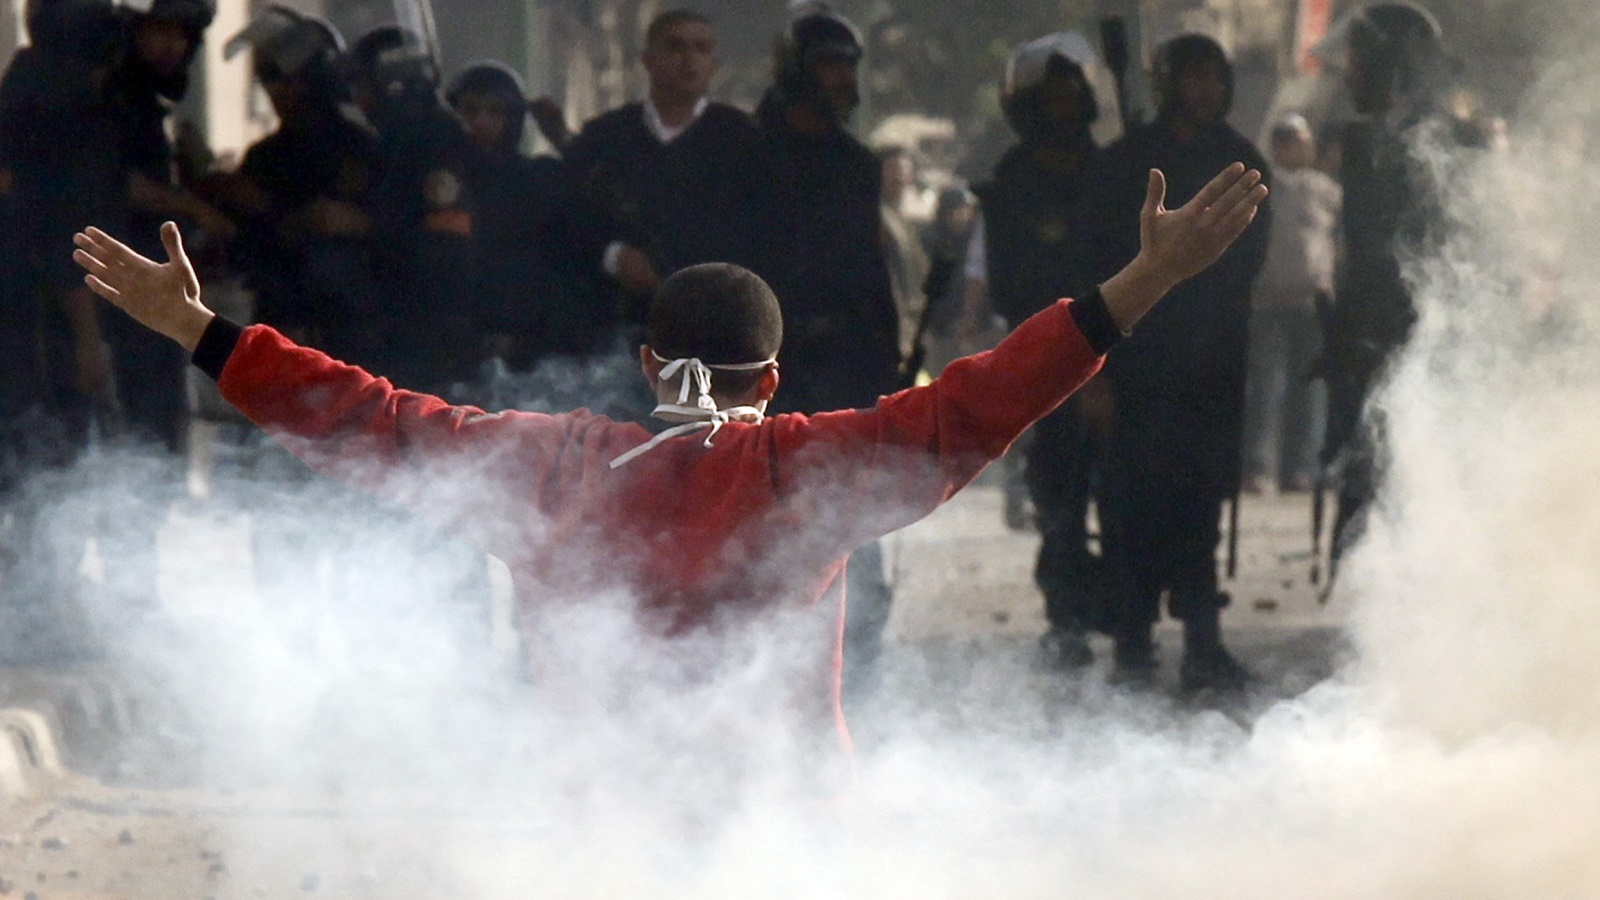 اليوم الرابع كان فاصلا في مسيرة الثورة سمي بجمعة الغضب حيث شهد اشتباكات واسعة وعنف من قبل الشرطة ضد المتظاهرين في كافة أنحاء مصر